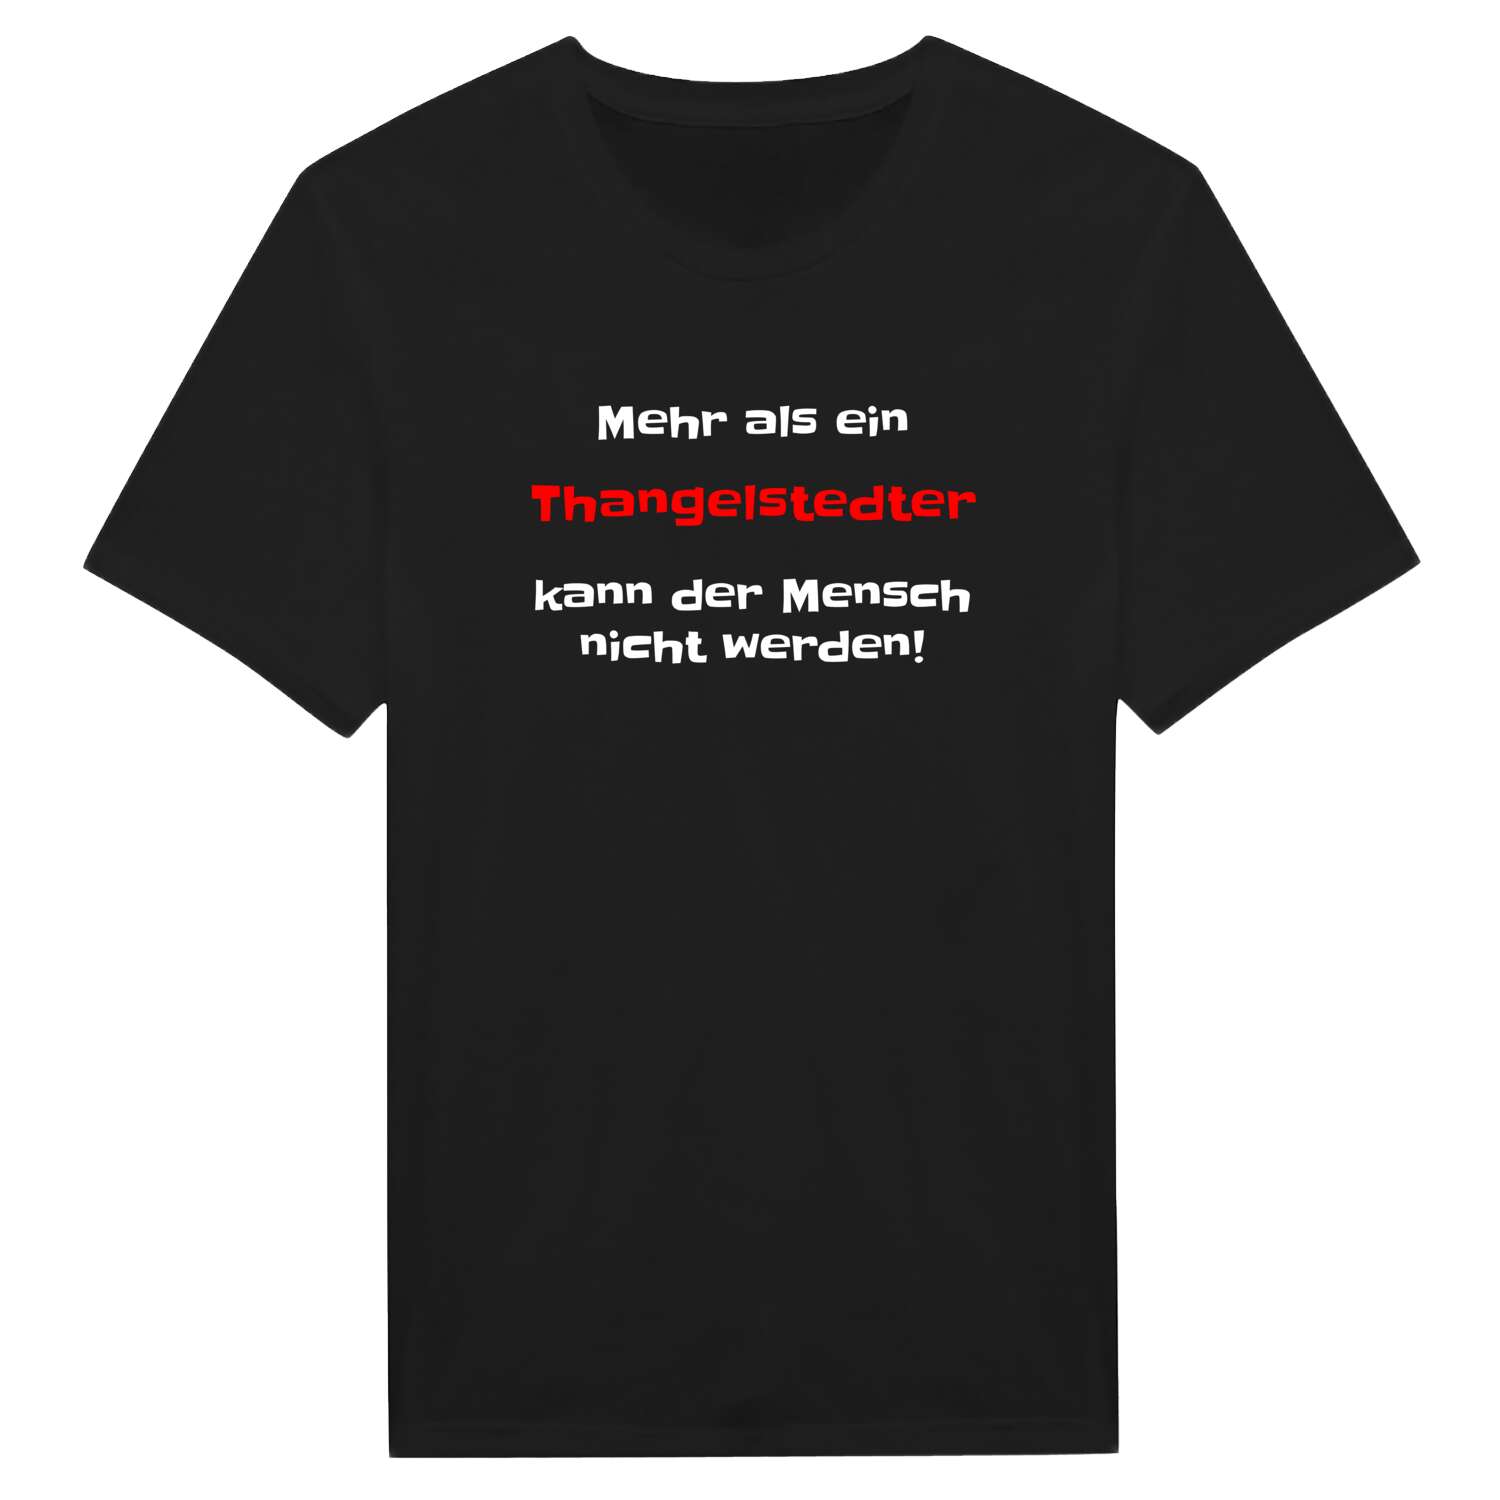 Thangelstedt T-Shirt »Mehr als ein«